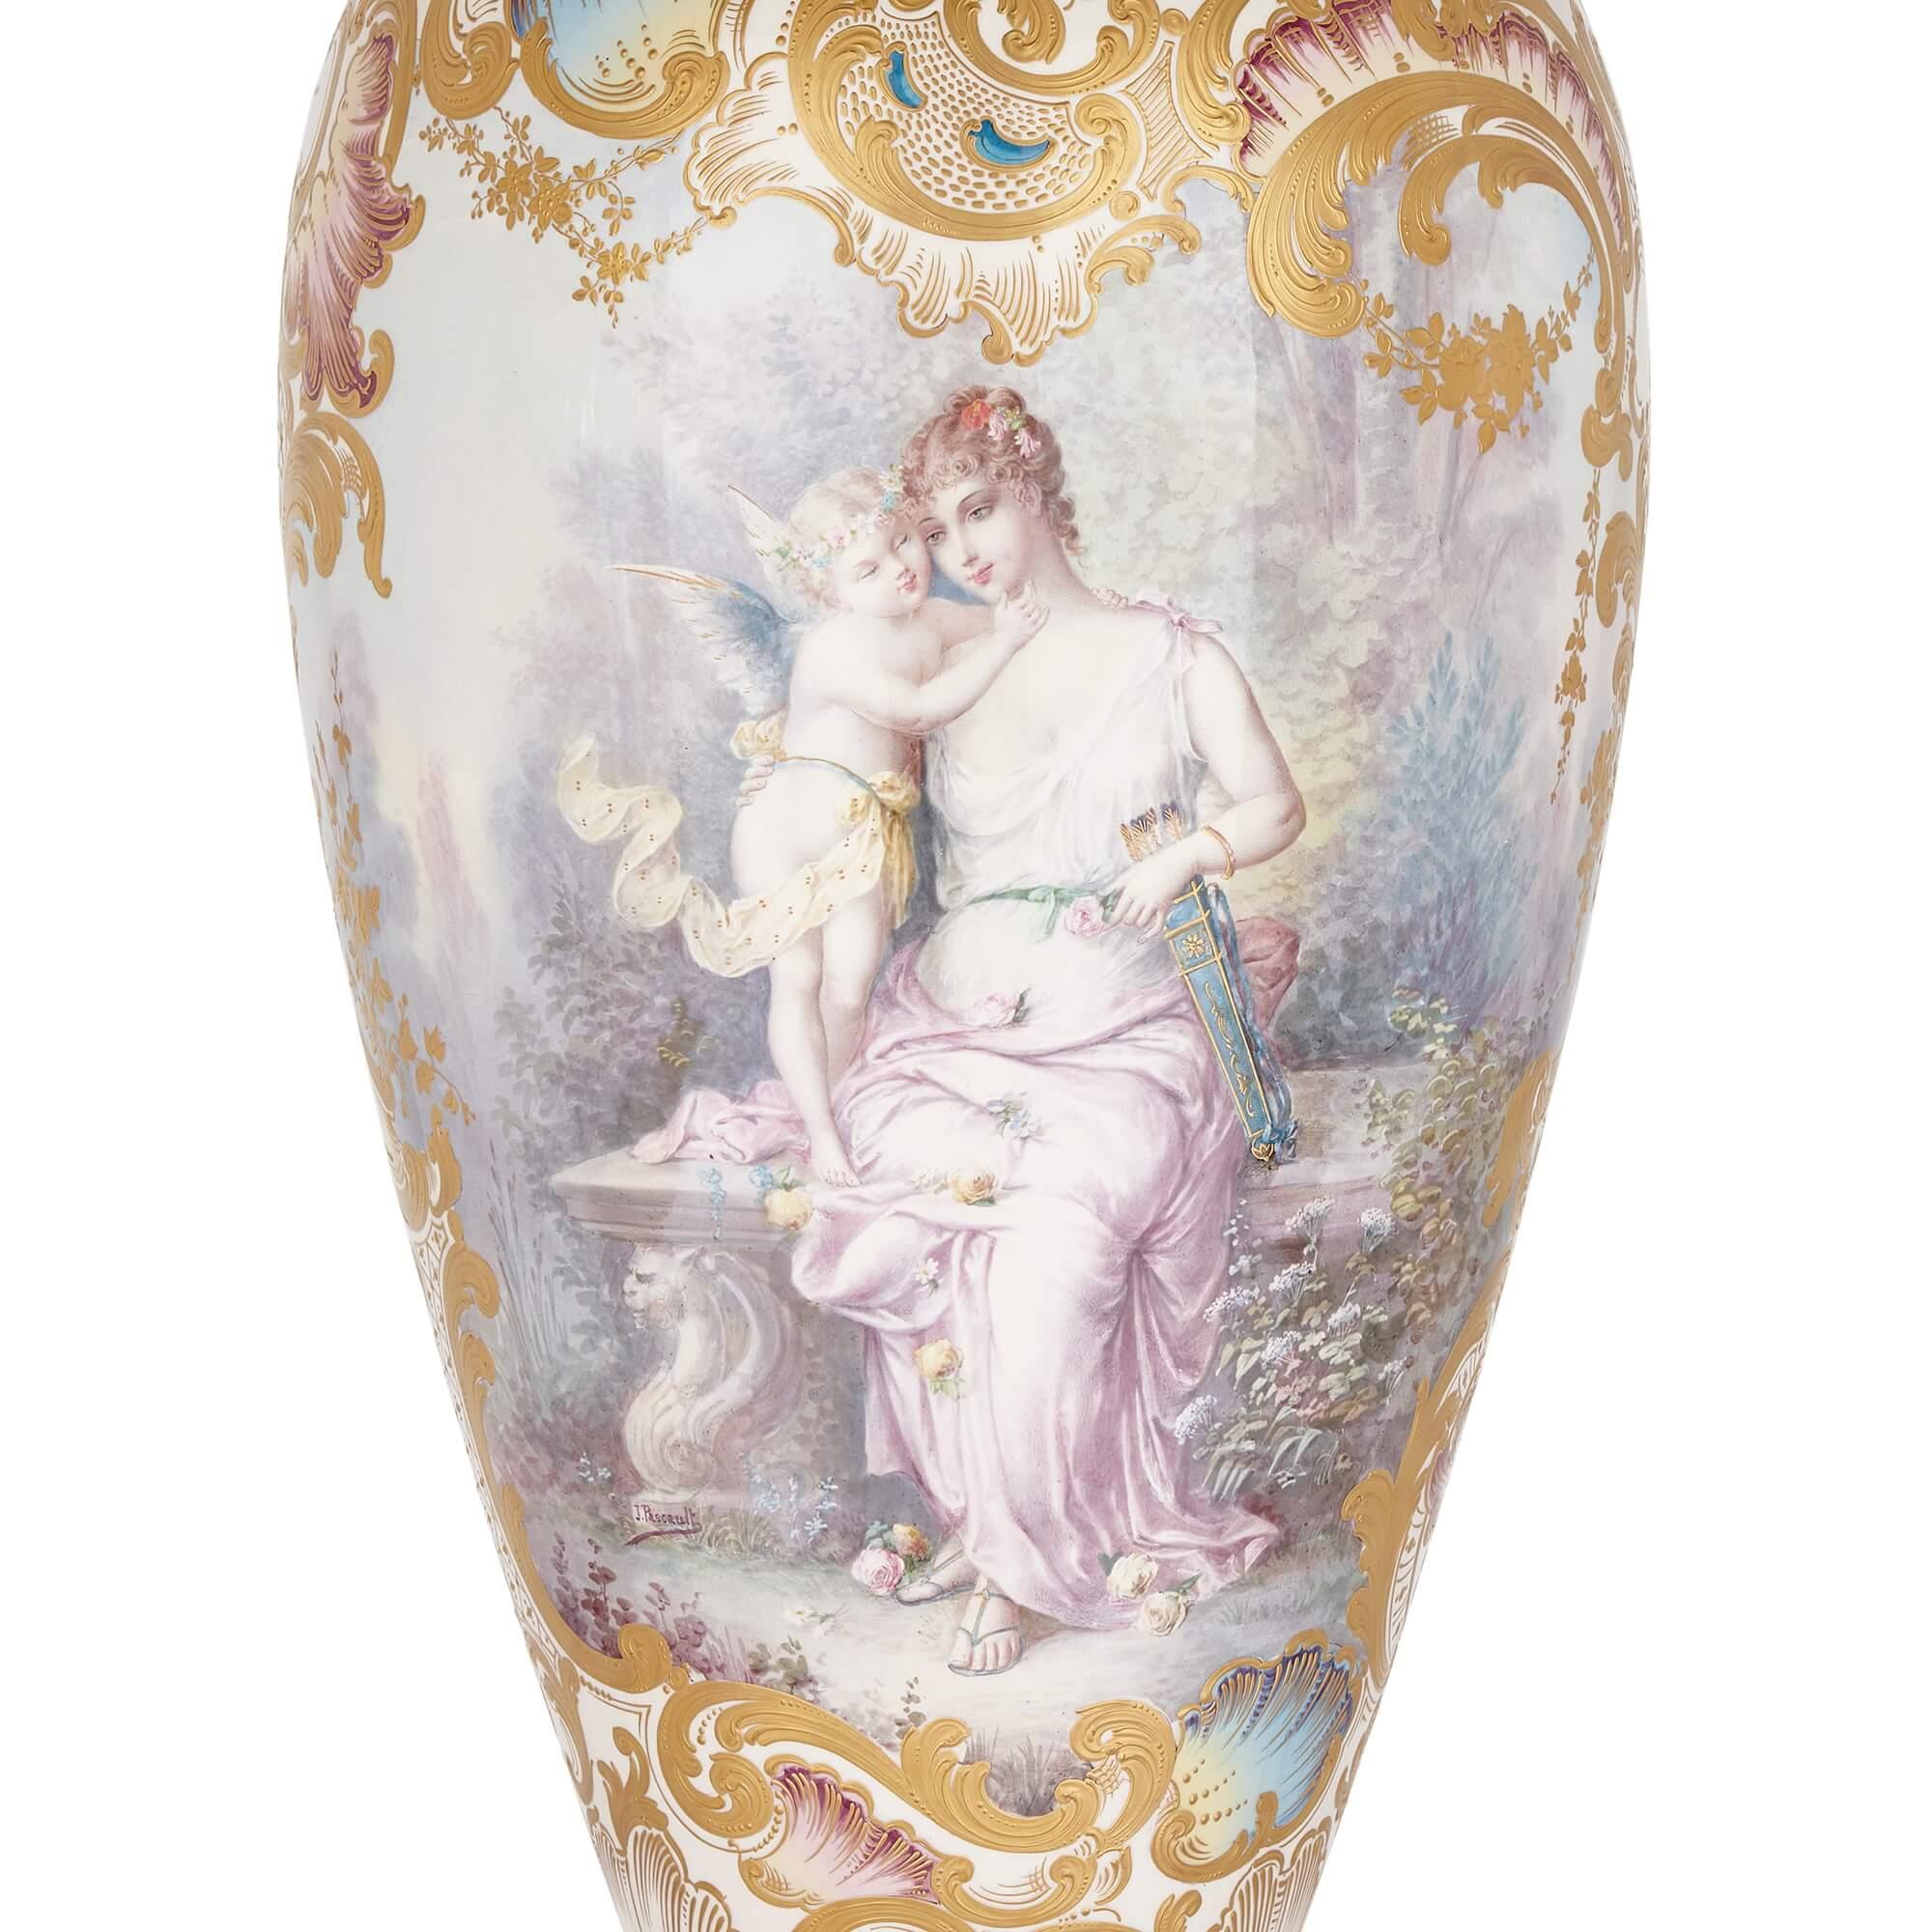 Sehr große antike französische Porzellanvase im Sèvres-Stil
Französisch, Ende 19. Jahrhundert
Höhe 154cm, Durchmesser 41cm

Diese fantastische Vase ist das Werk von J. Pascault, einem famosen Porzellankünstler des späten 19. Jahrhunderts, der sich